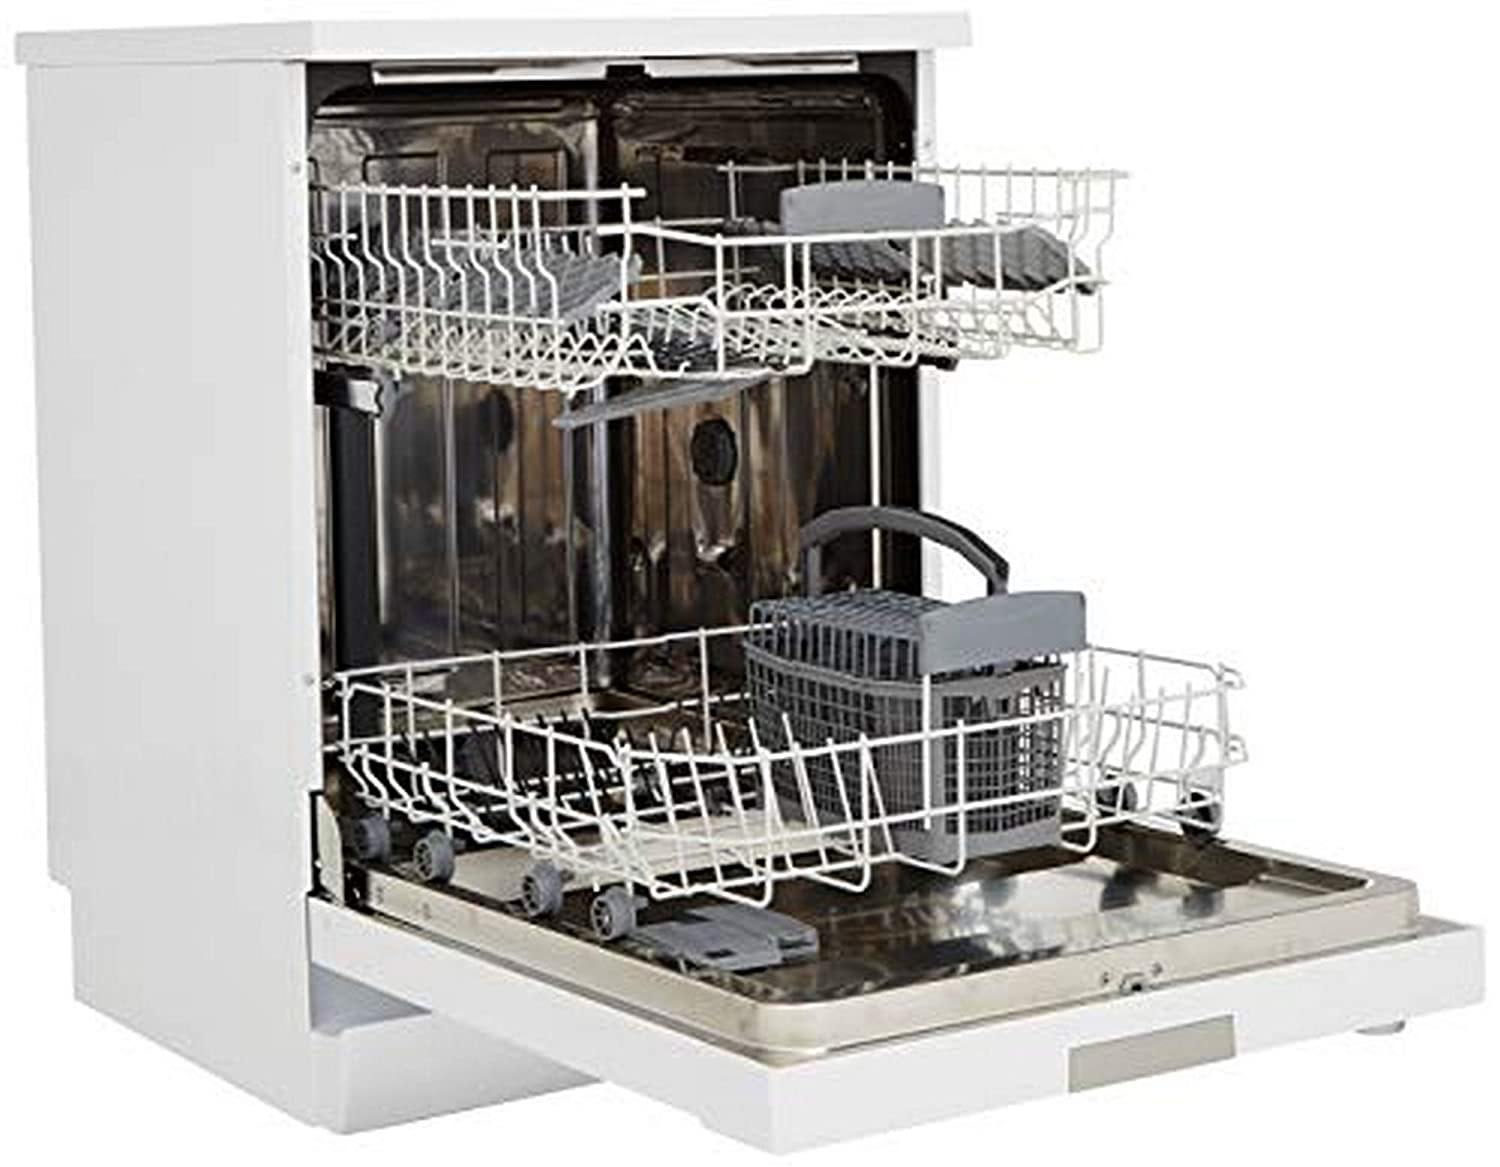 IFB Neptune FX Fully Electronic Dishwasher (12 Place Settings, White) - Mahajan Electronics Online